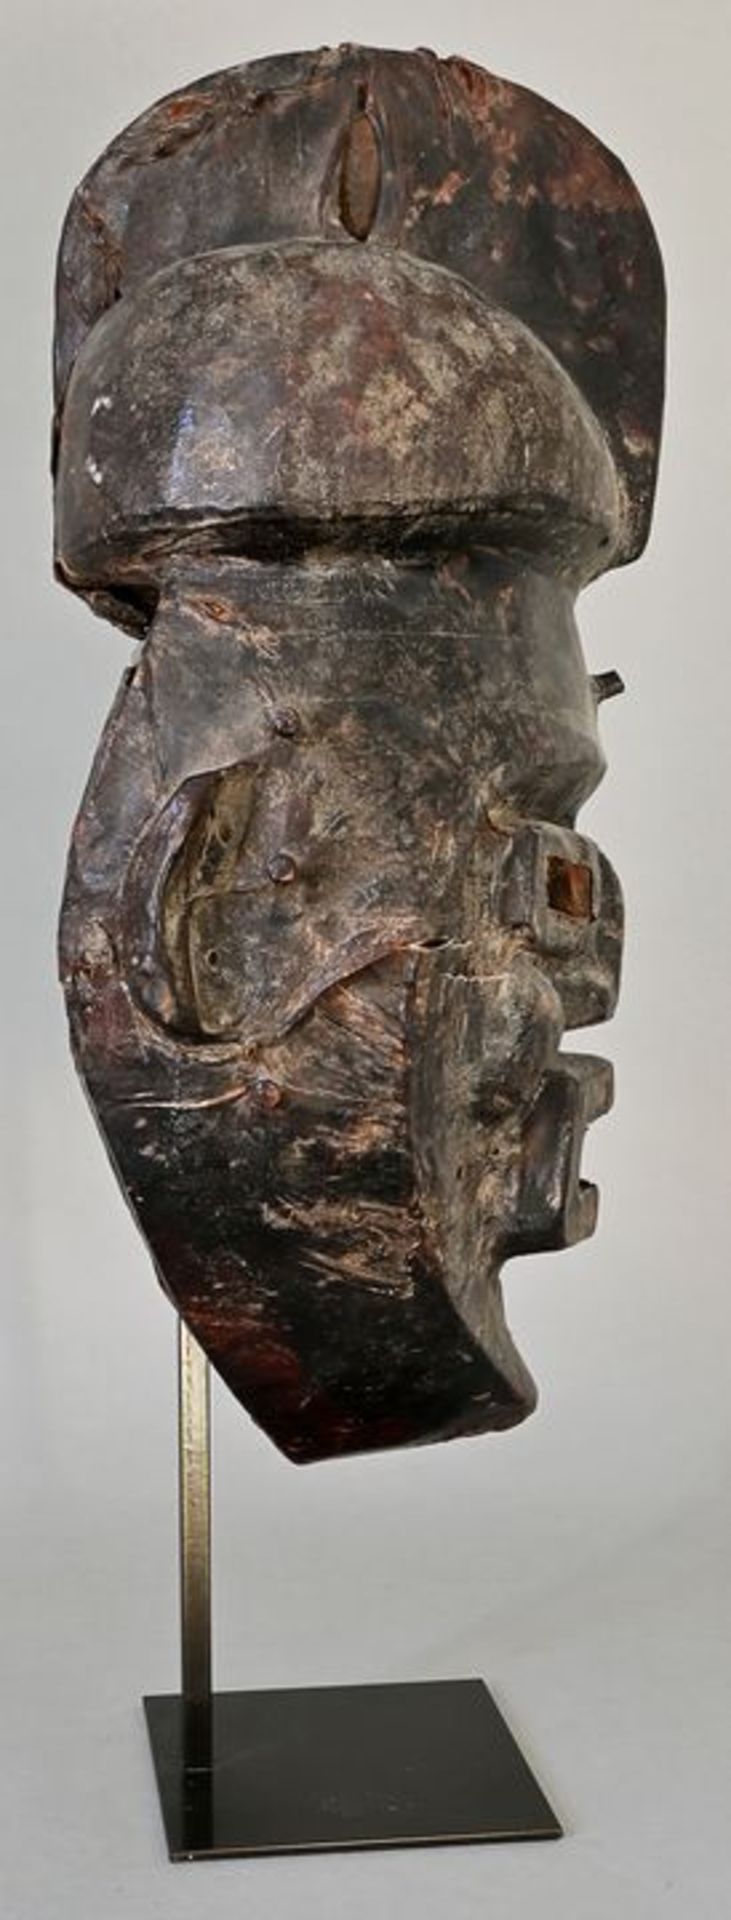 Maske agwe/ agwe mask - Image 3 of 3